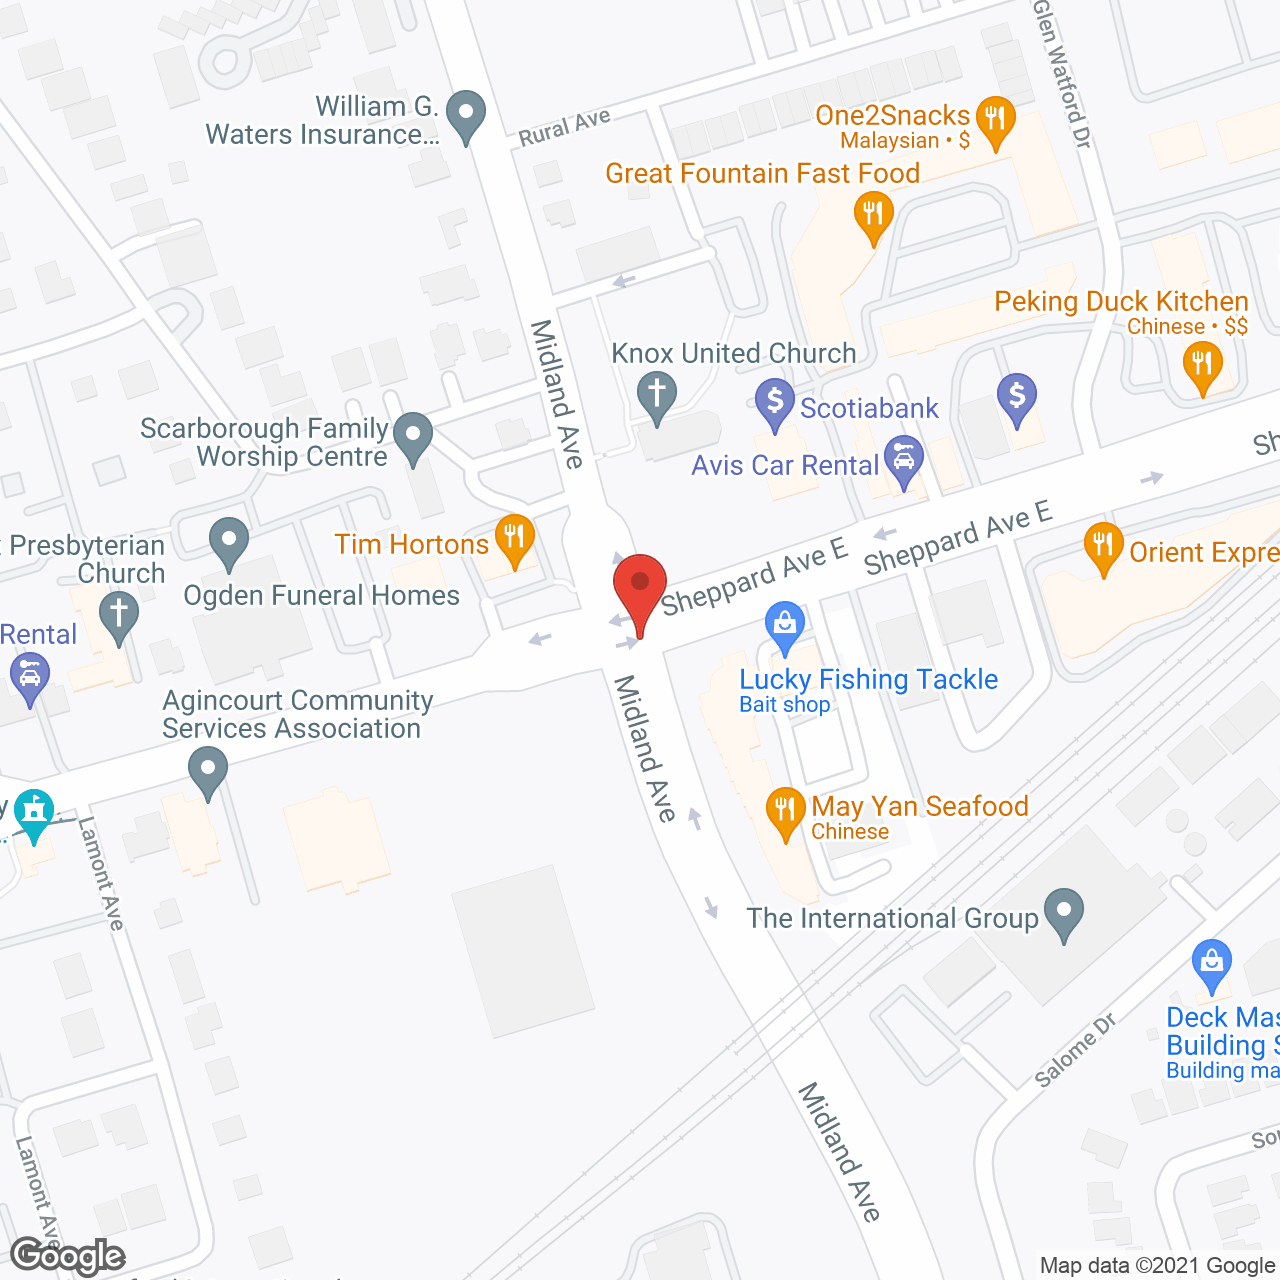 Shepherd Village in google map